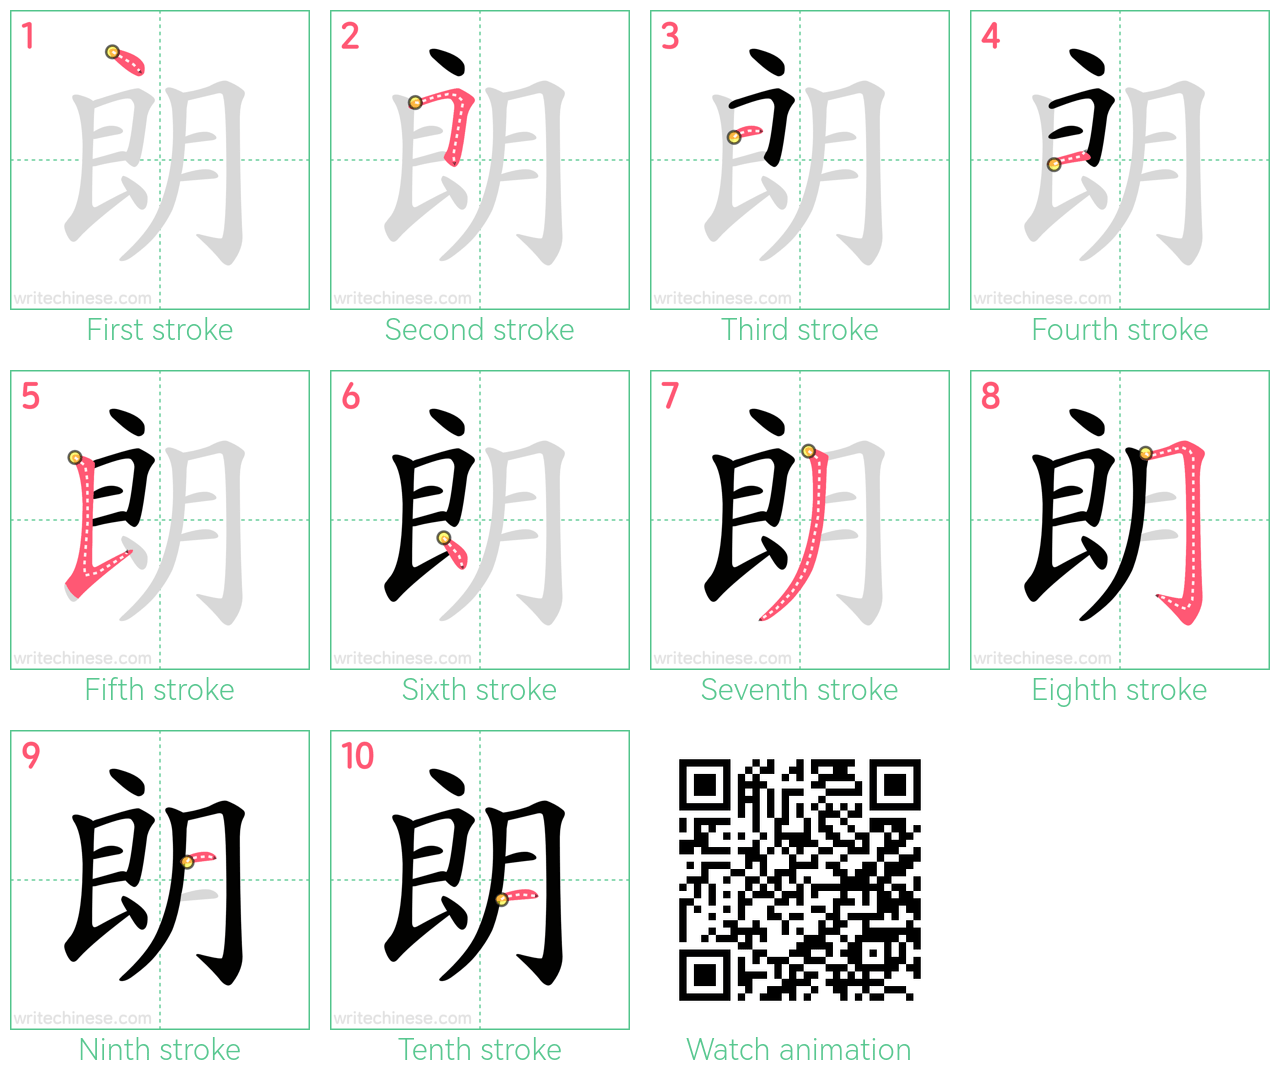 朗 step-by-step stroke order diagrams